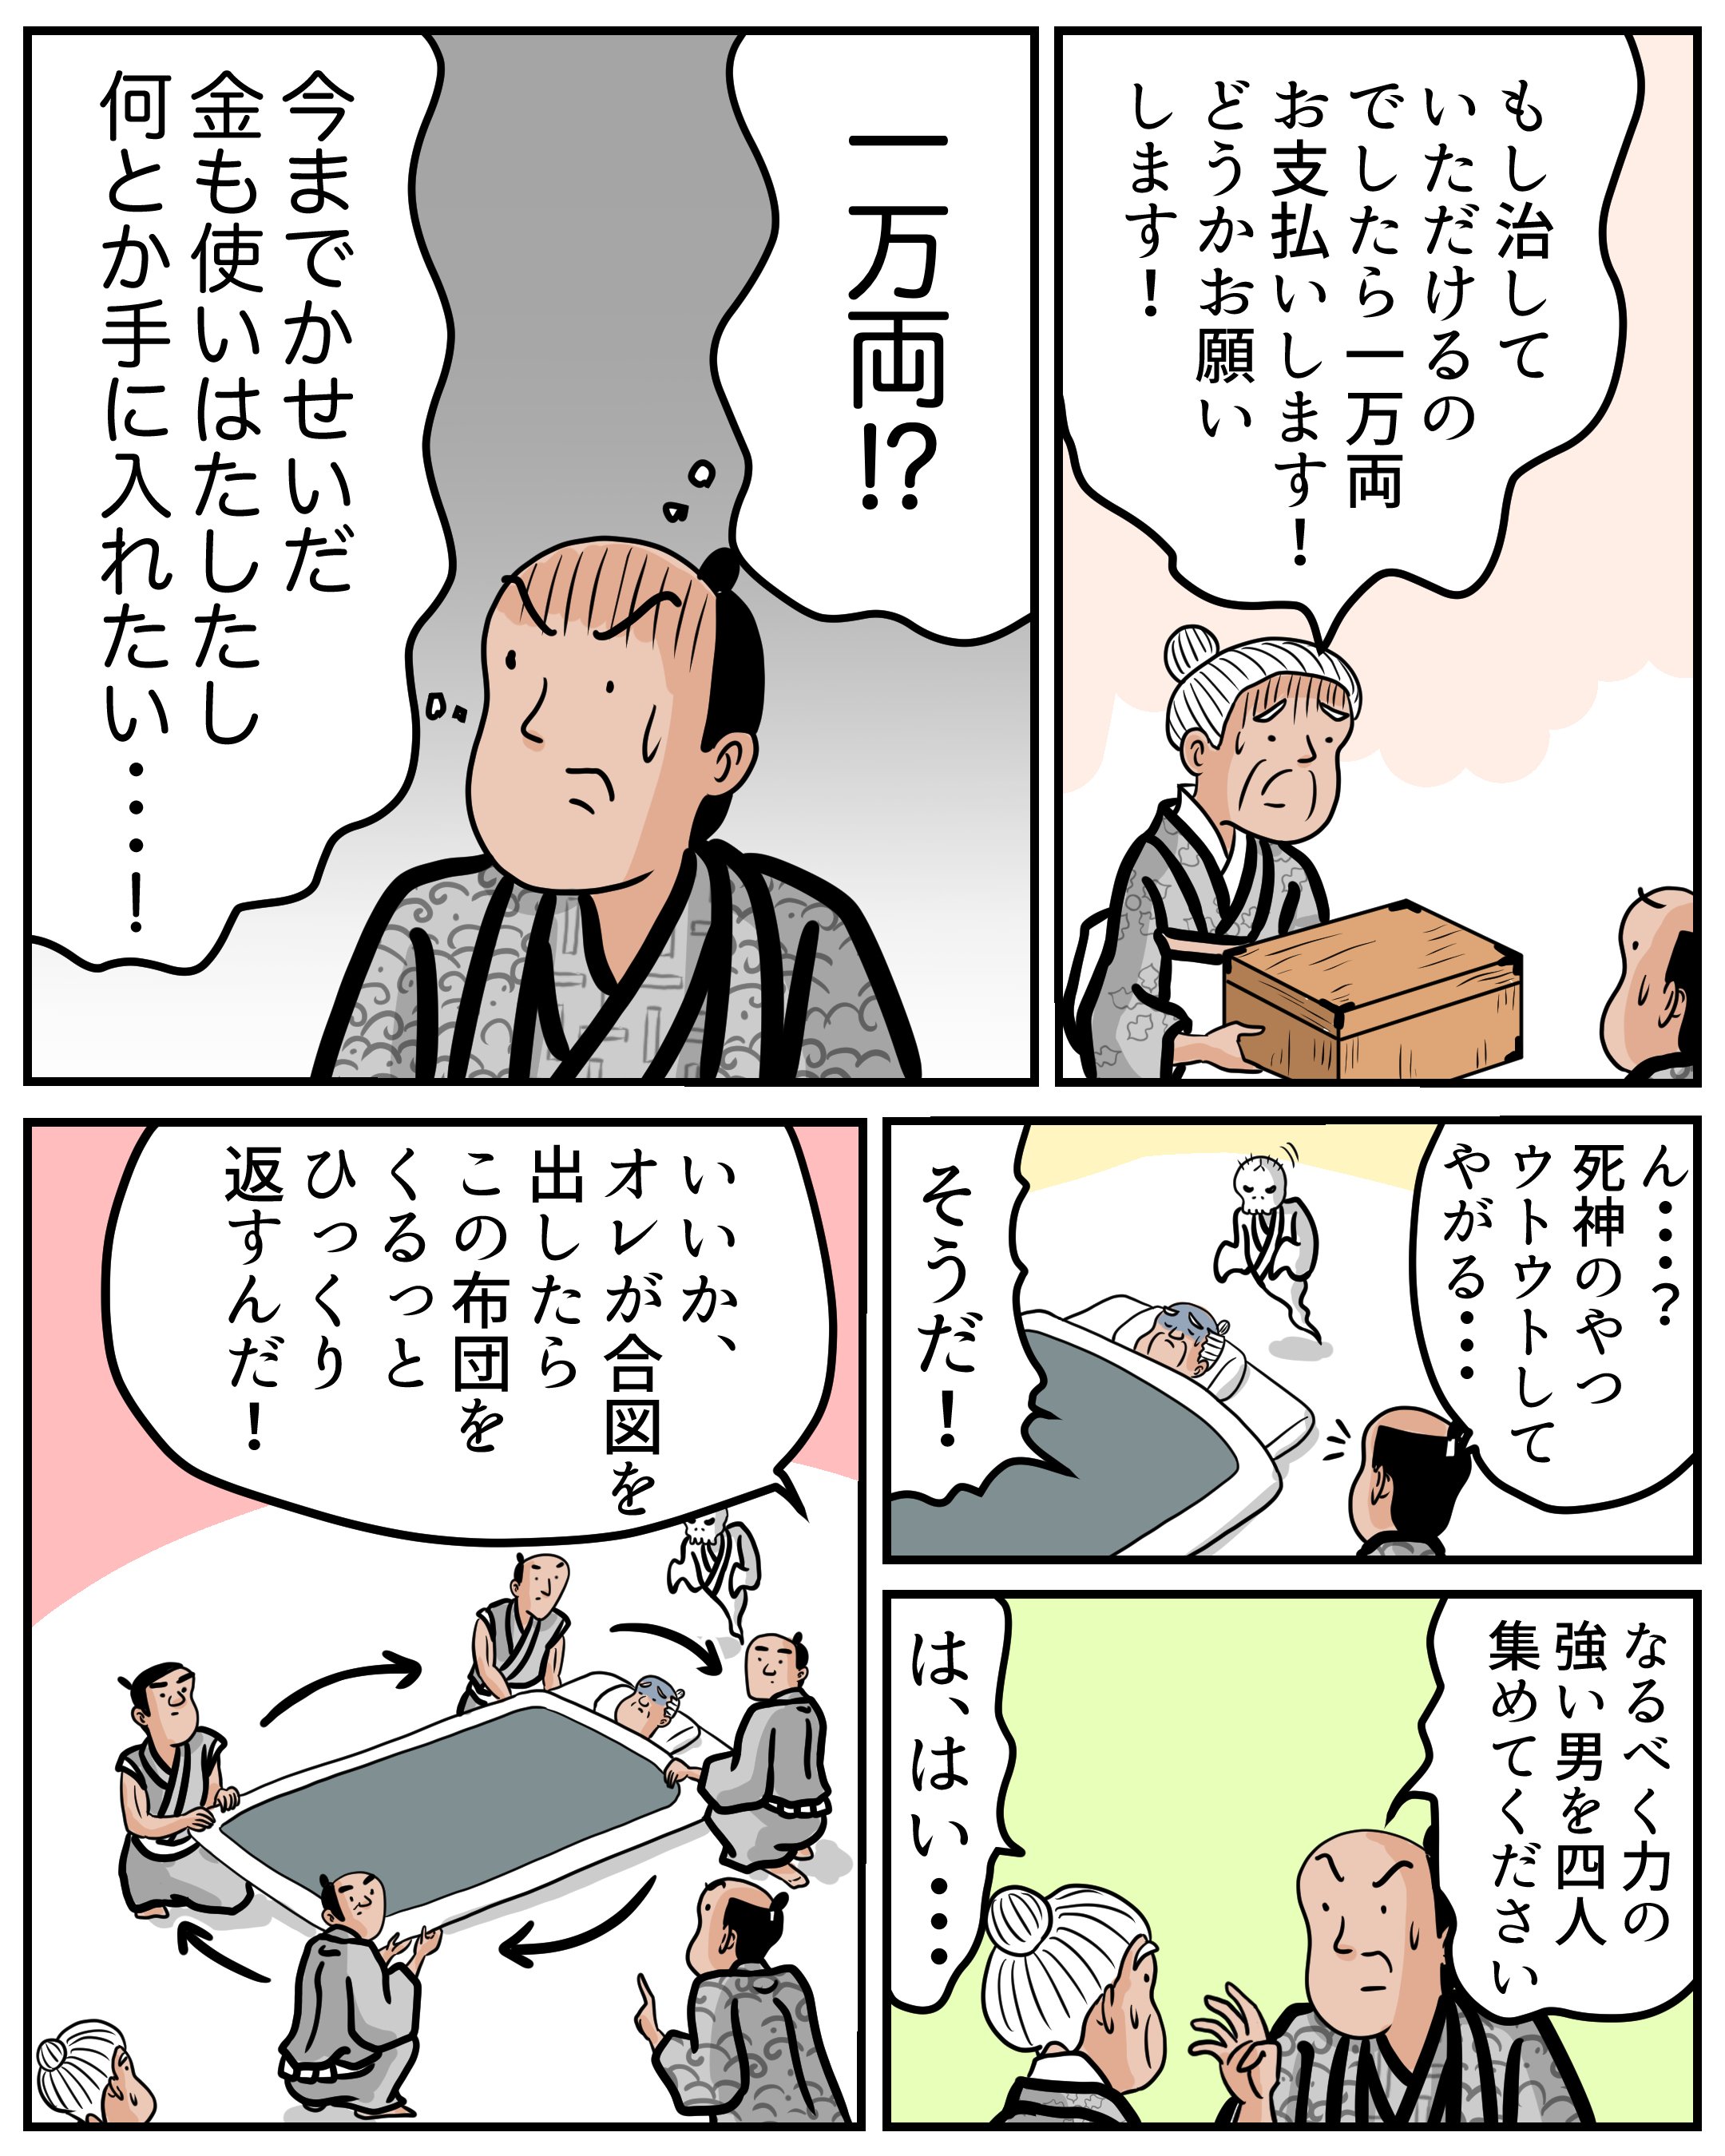 １分で読める マンガで落語 死神 山田全自動の漫画 Note